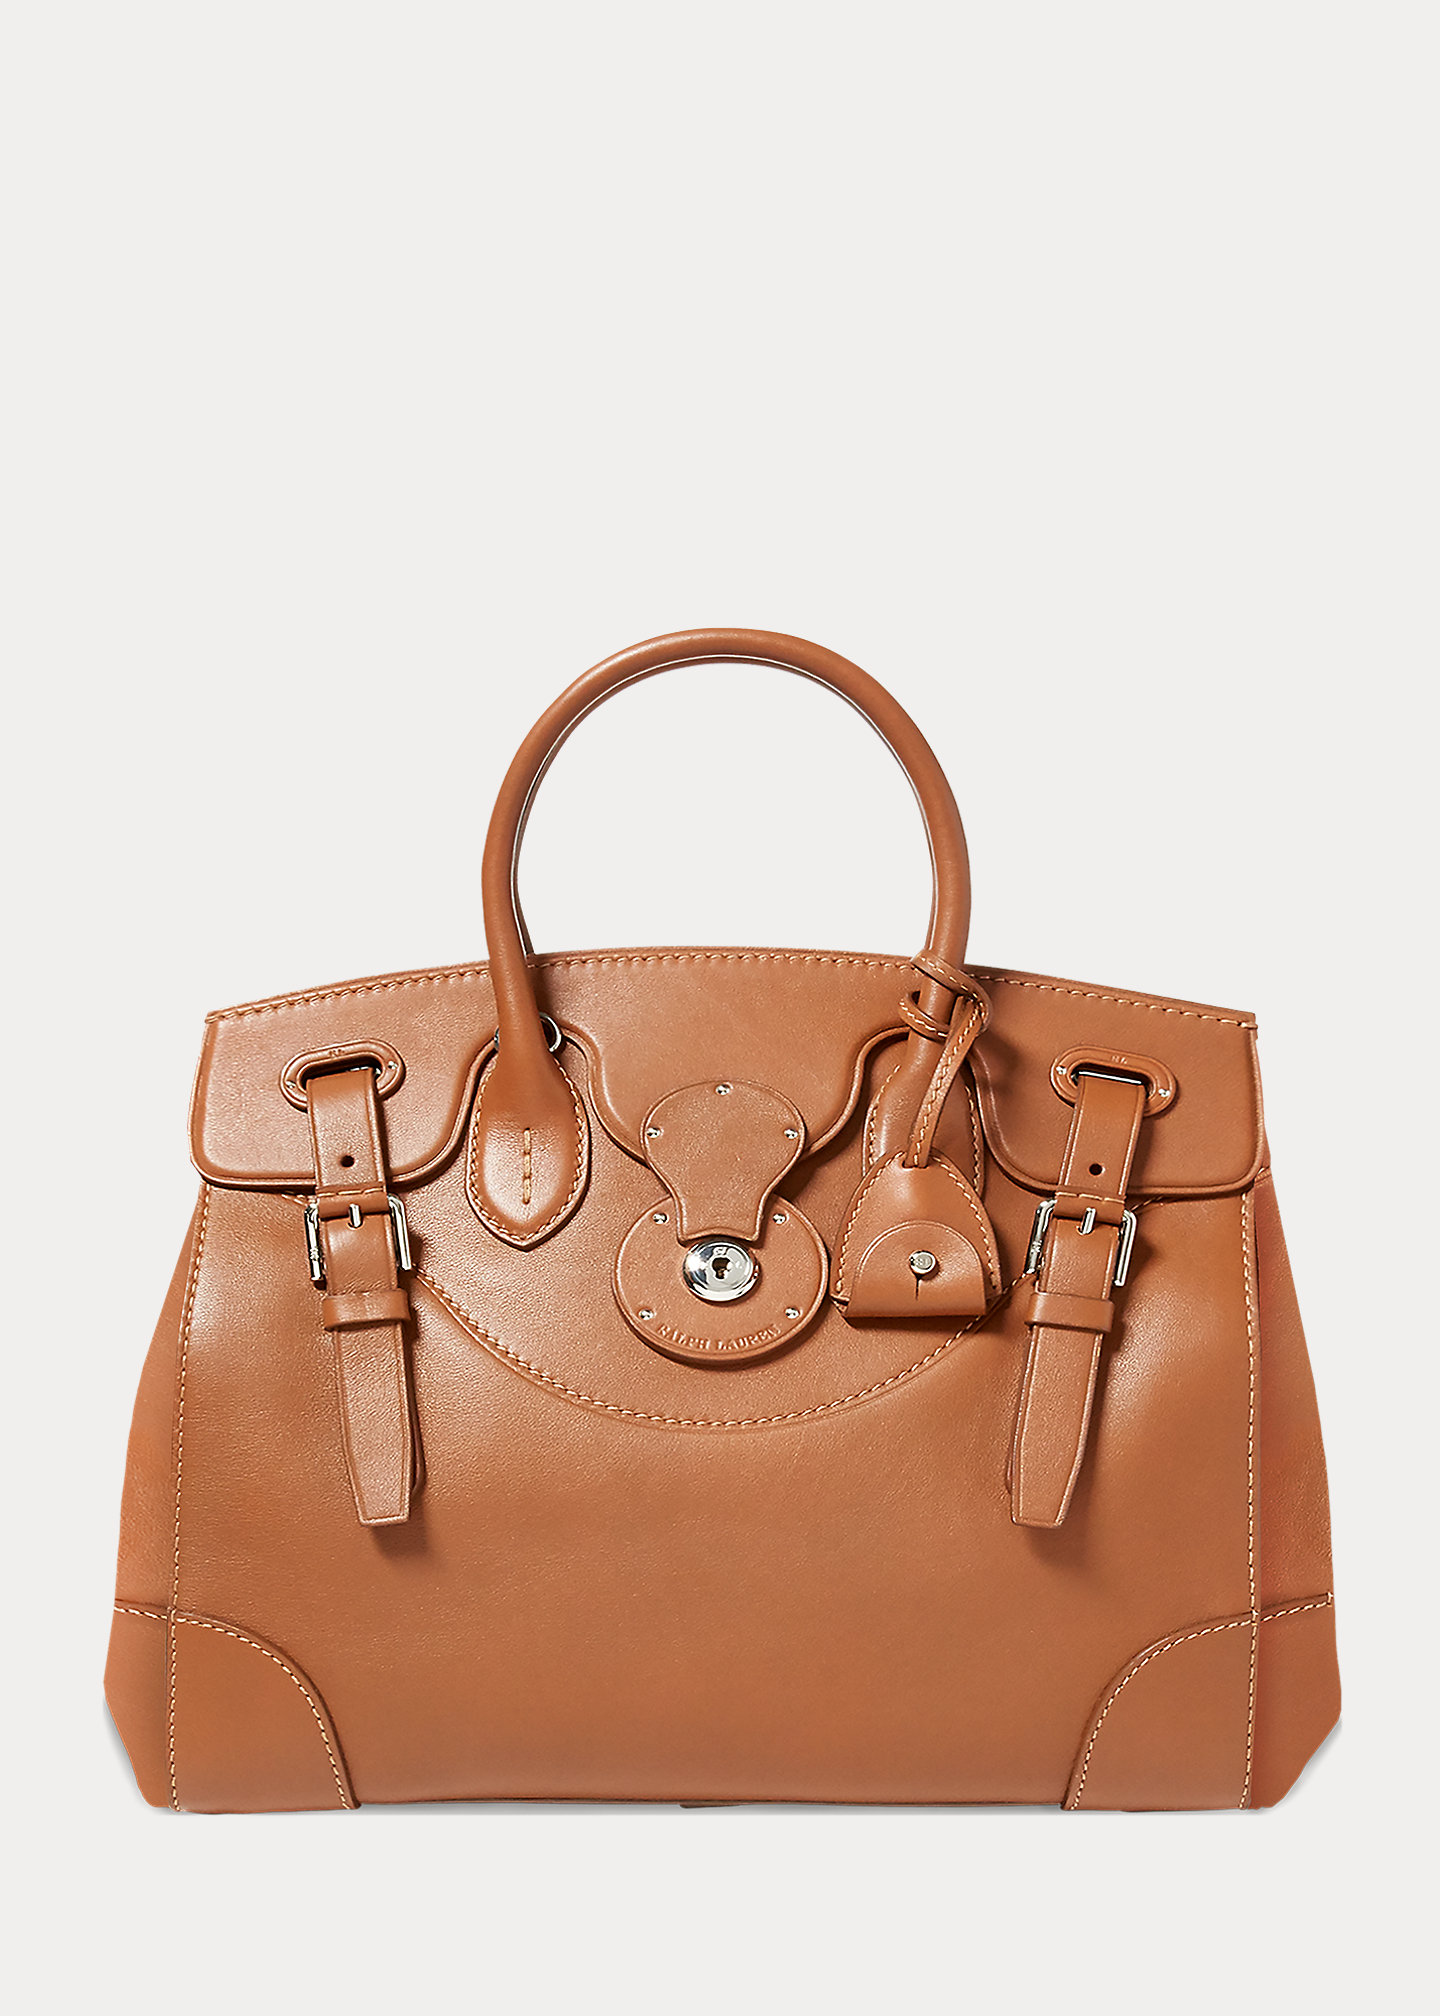 Top 8 Timeless Goyard Bags - luxfy